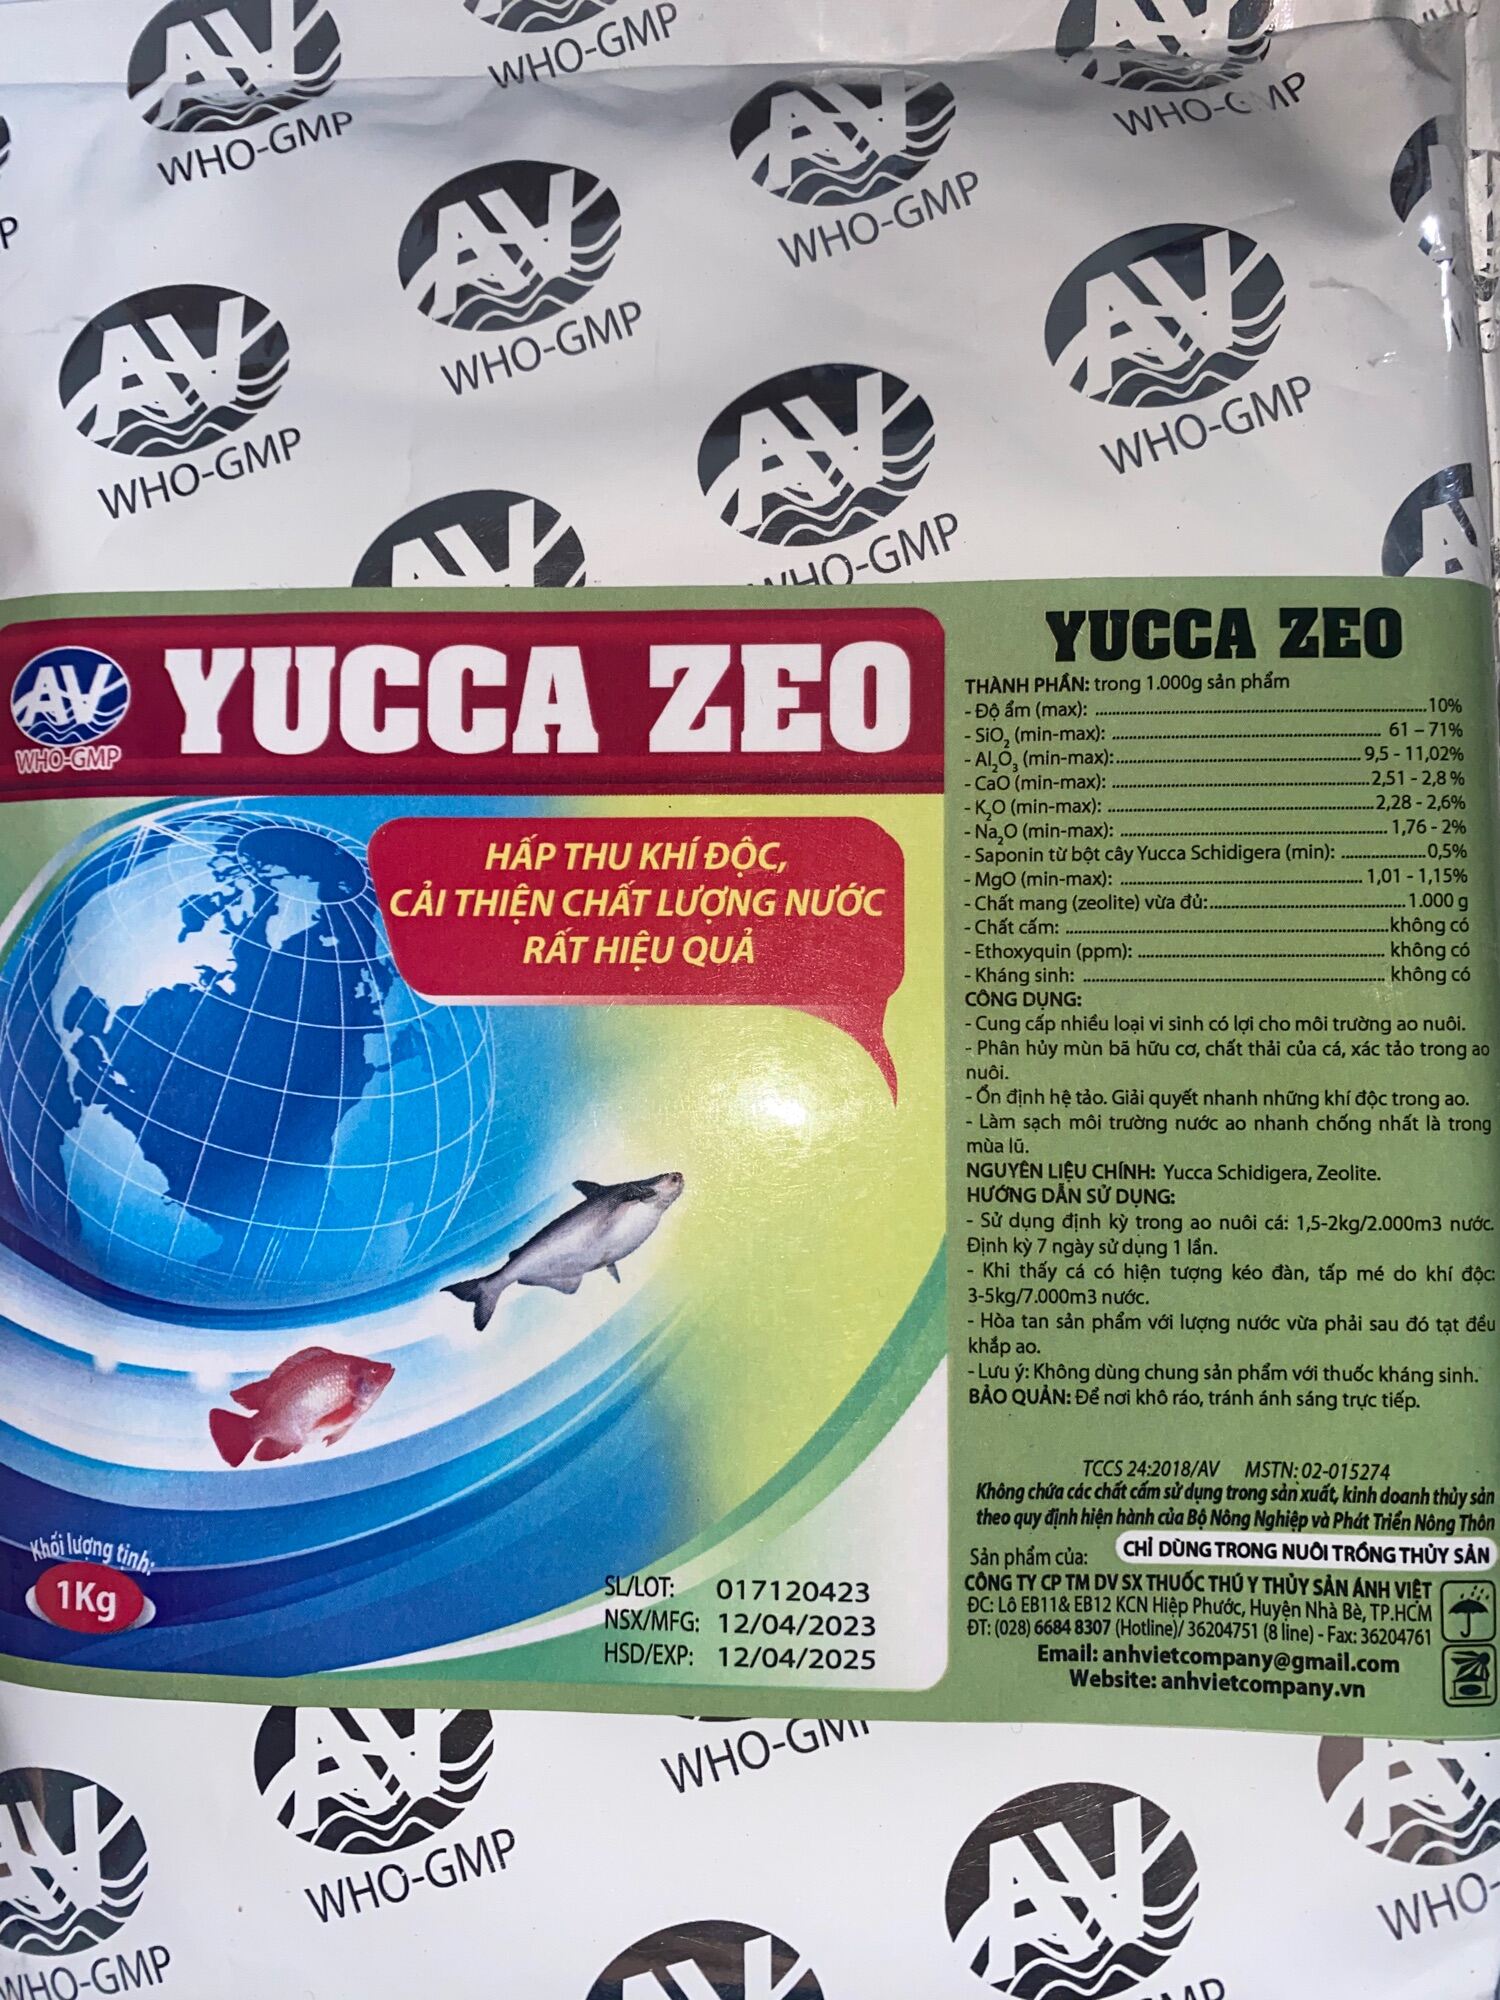 Yucca zeo hấp thụ khí độc, cải thiện môi trường chăn nuôi cá ếch...